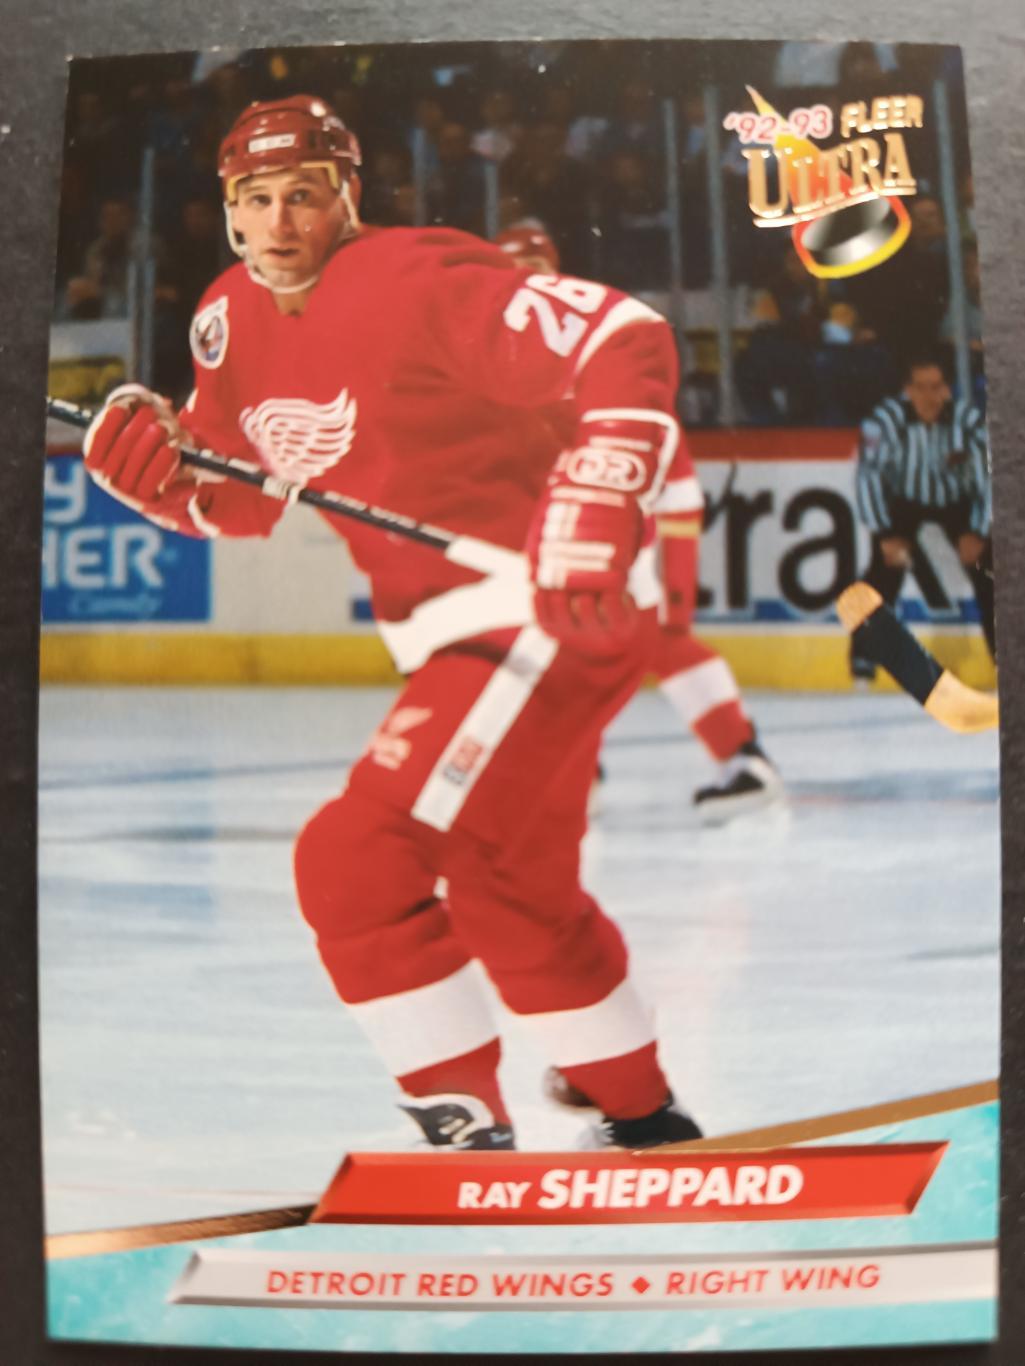 ХОККЕЙ КАРТОЧКА НХЛ FLEER ULTRA 1992-93 NHL RAY SHEPARD DETROIT RED WINGS #289